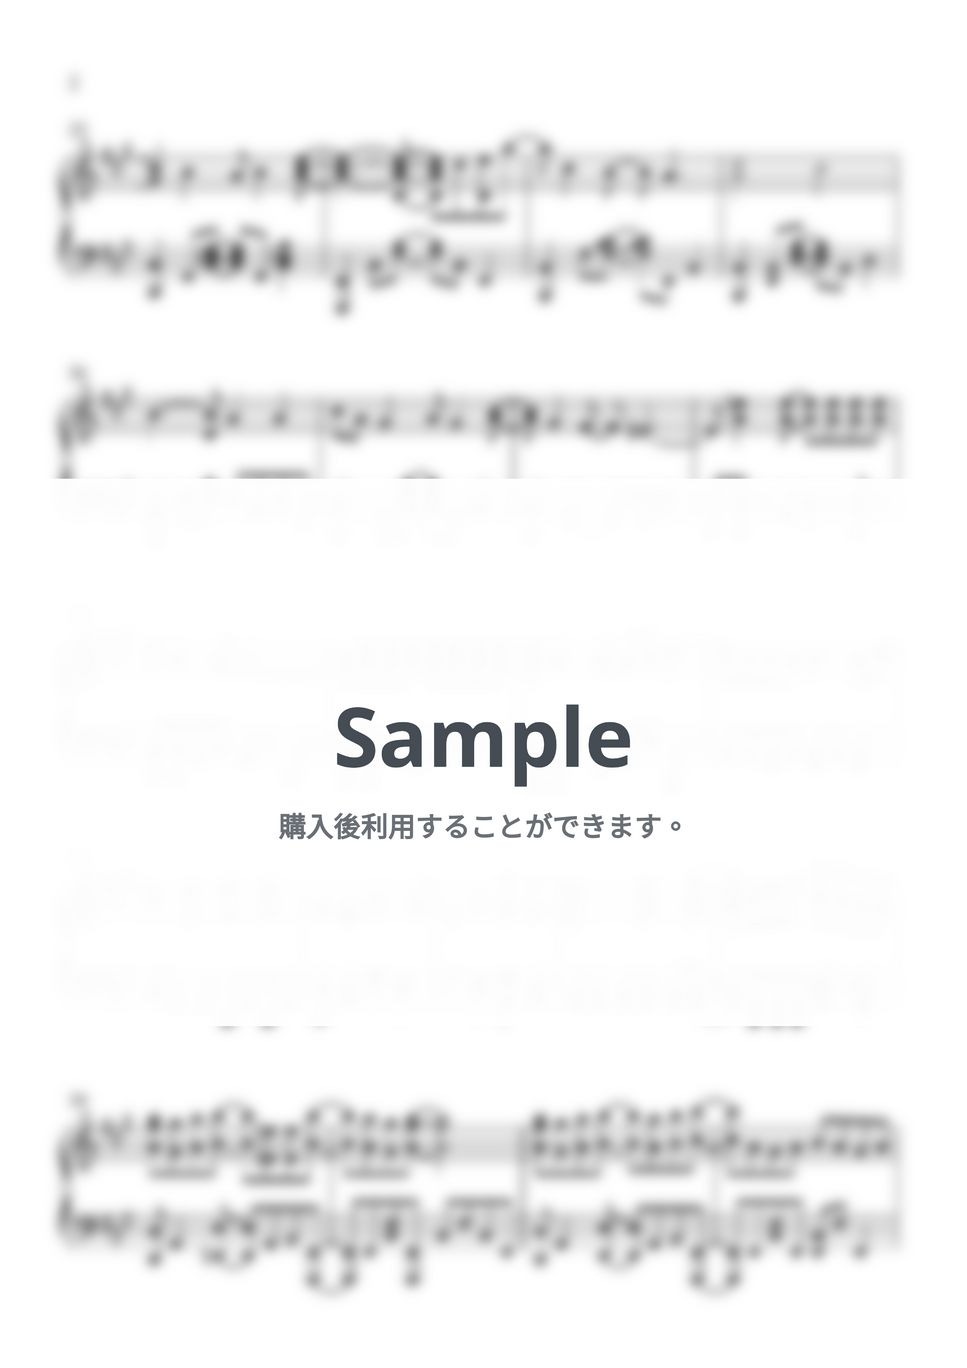 グース ハウス - 光るなら (楽譜、MIDI、ドラム & WAVファイル) by AsianMusicBox